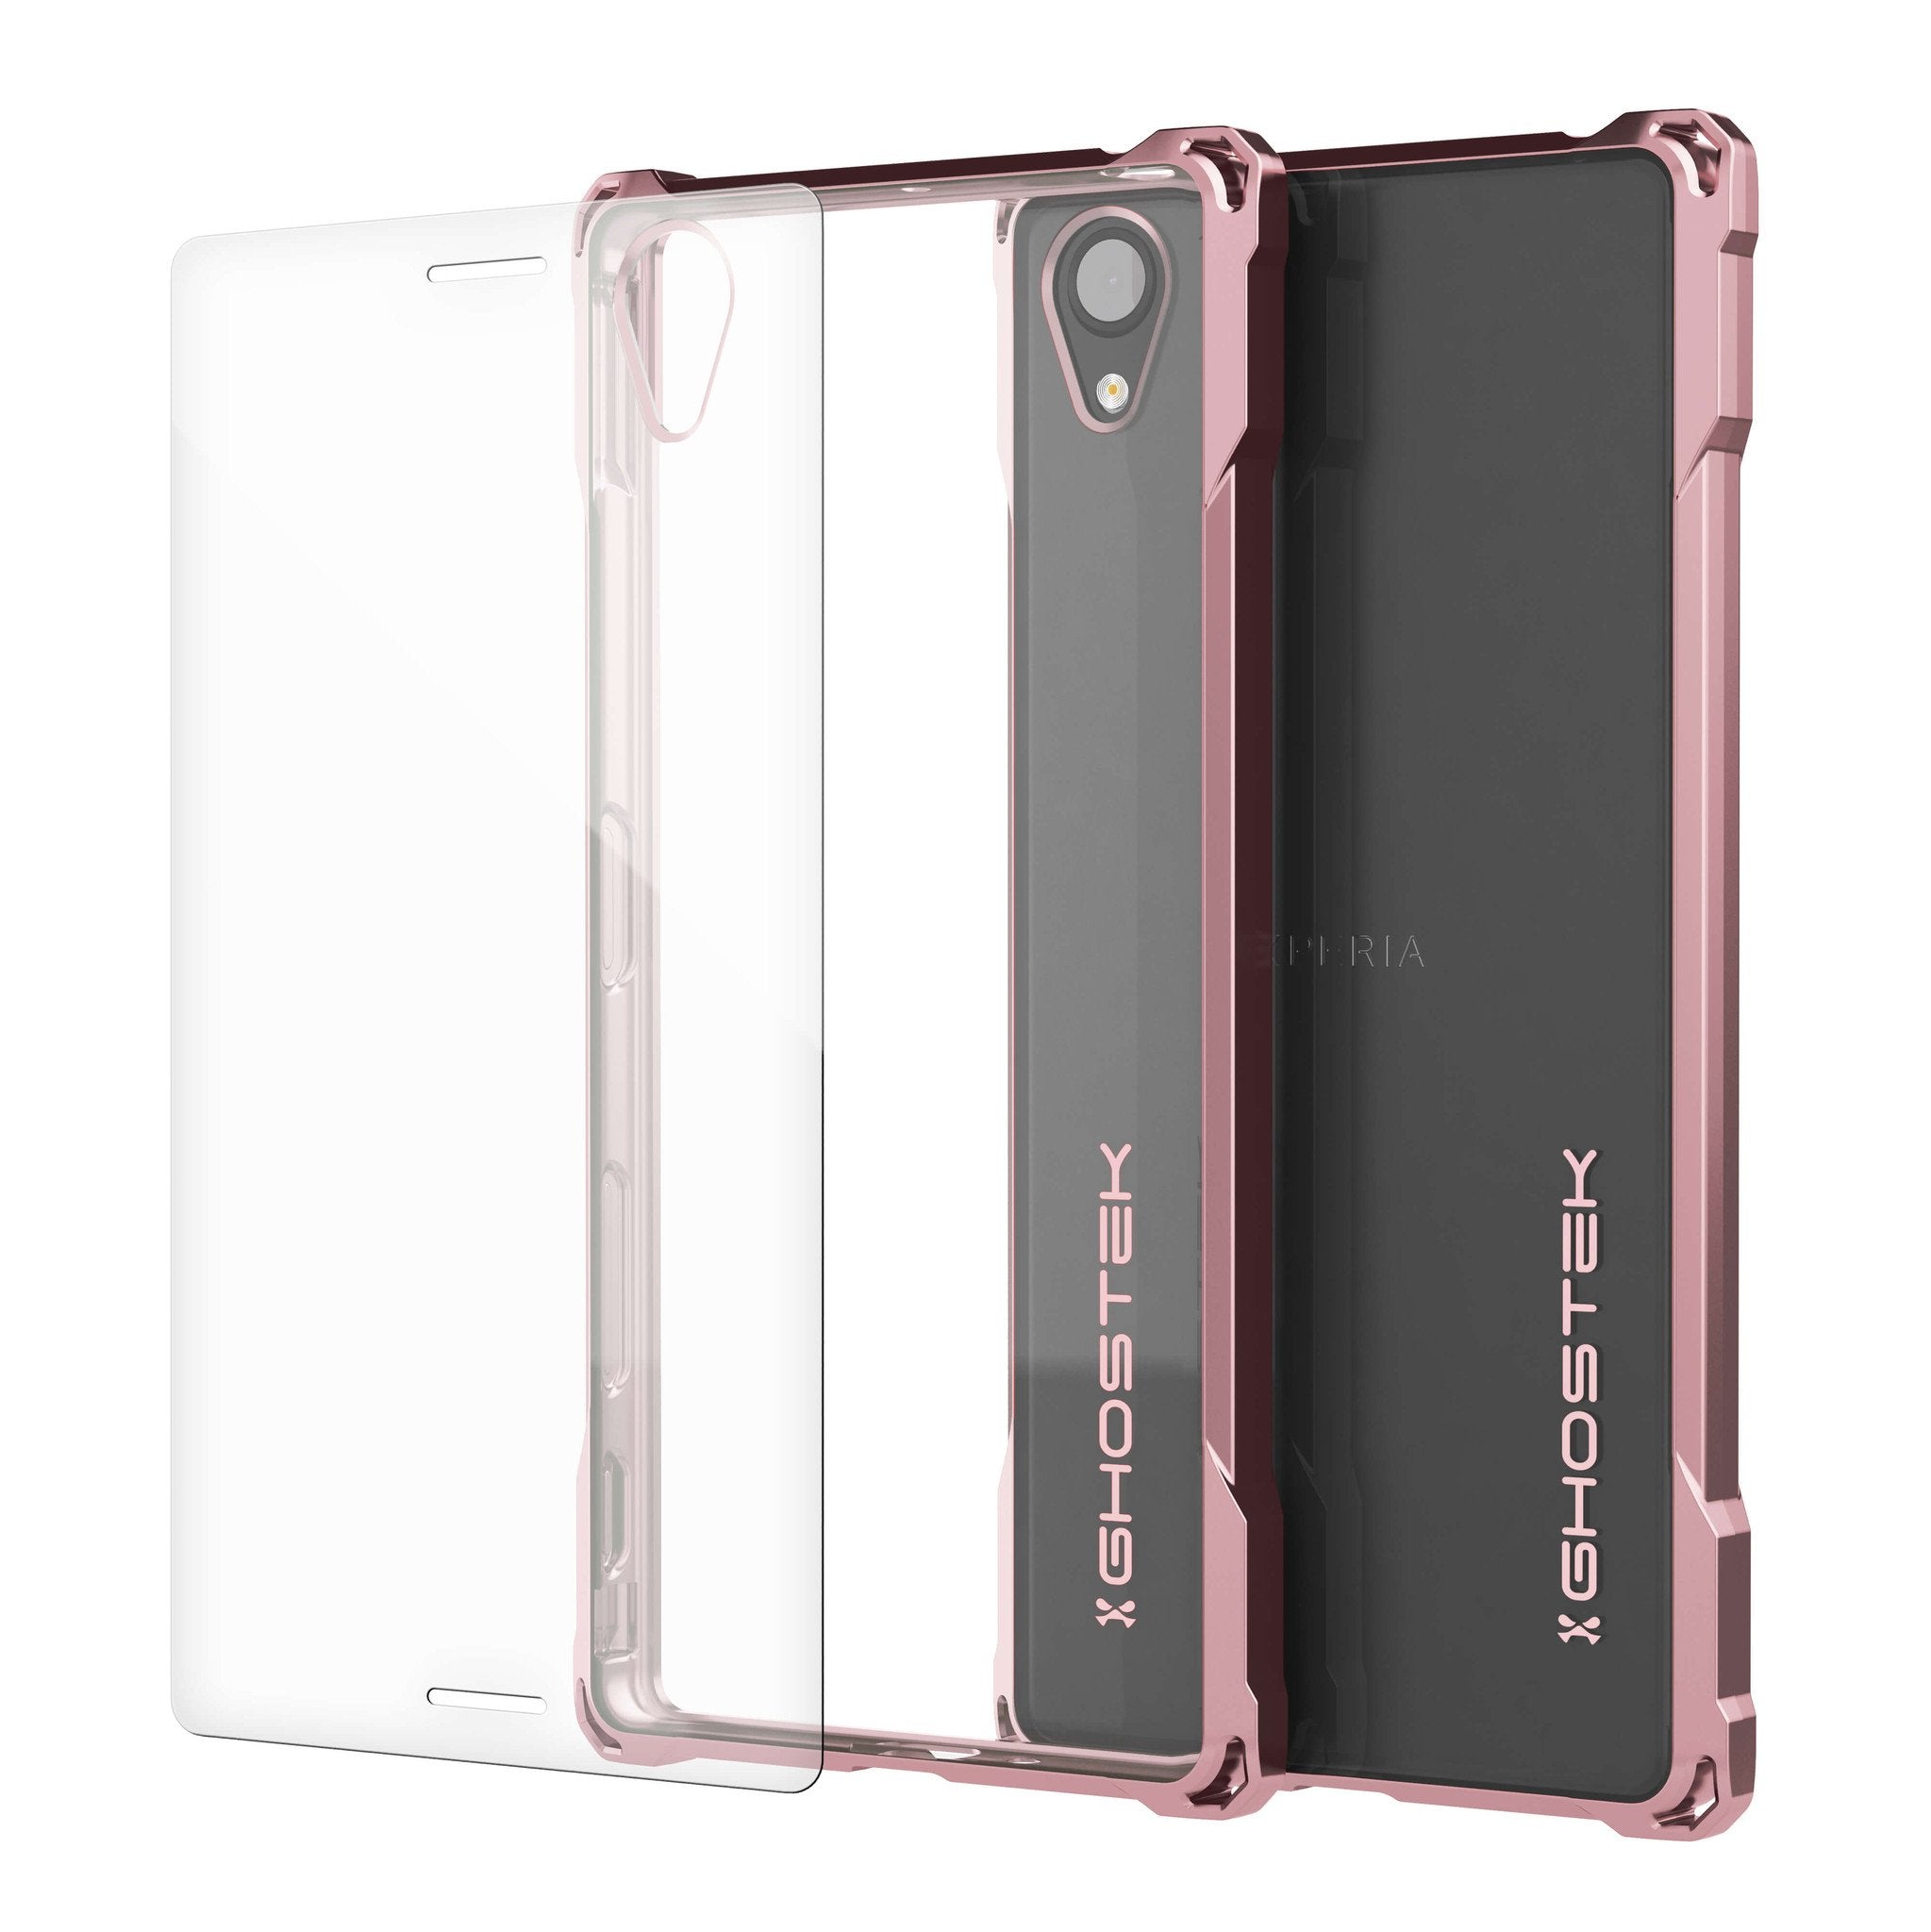 Xperia X Case, Ghostek® Covert Peach Seriesr | Clear TPU | Warranty | Screen Protector | Ultra Fit